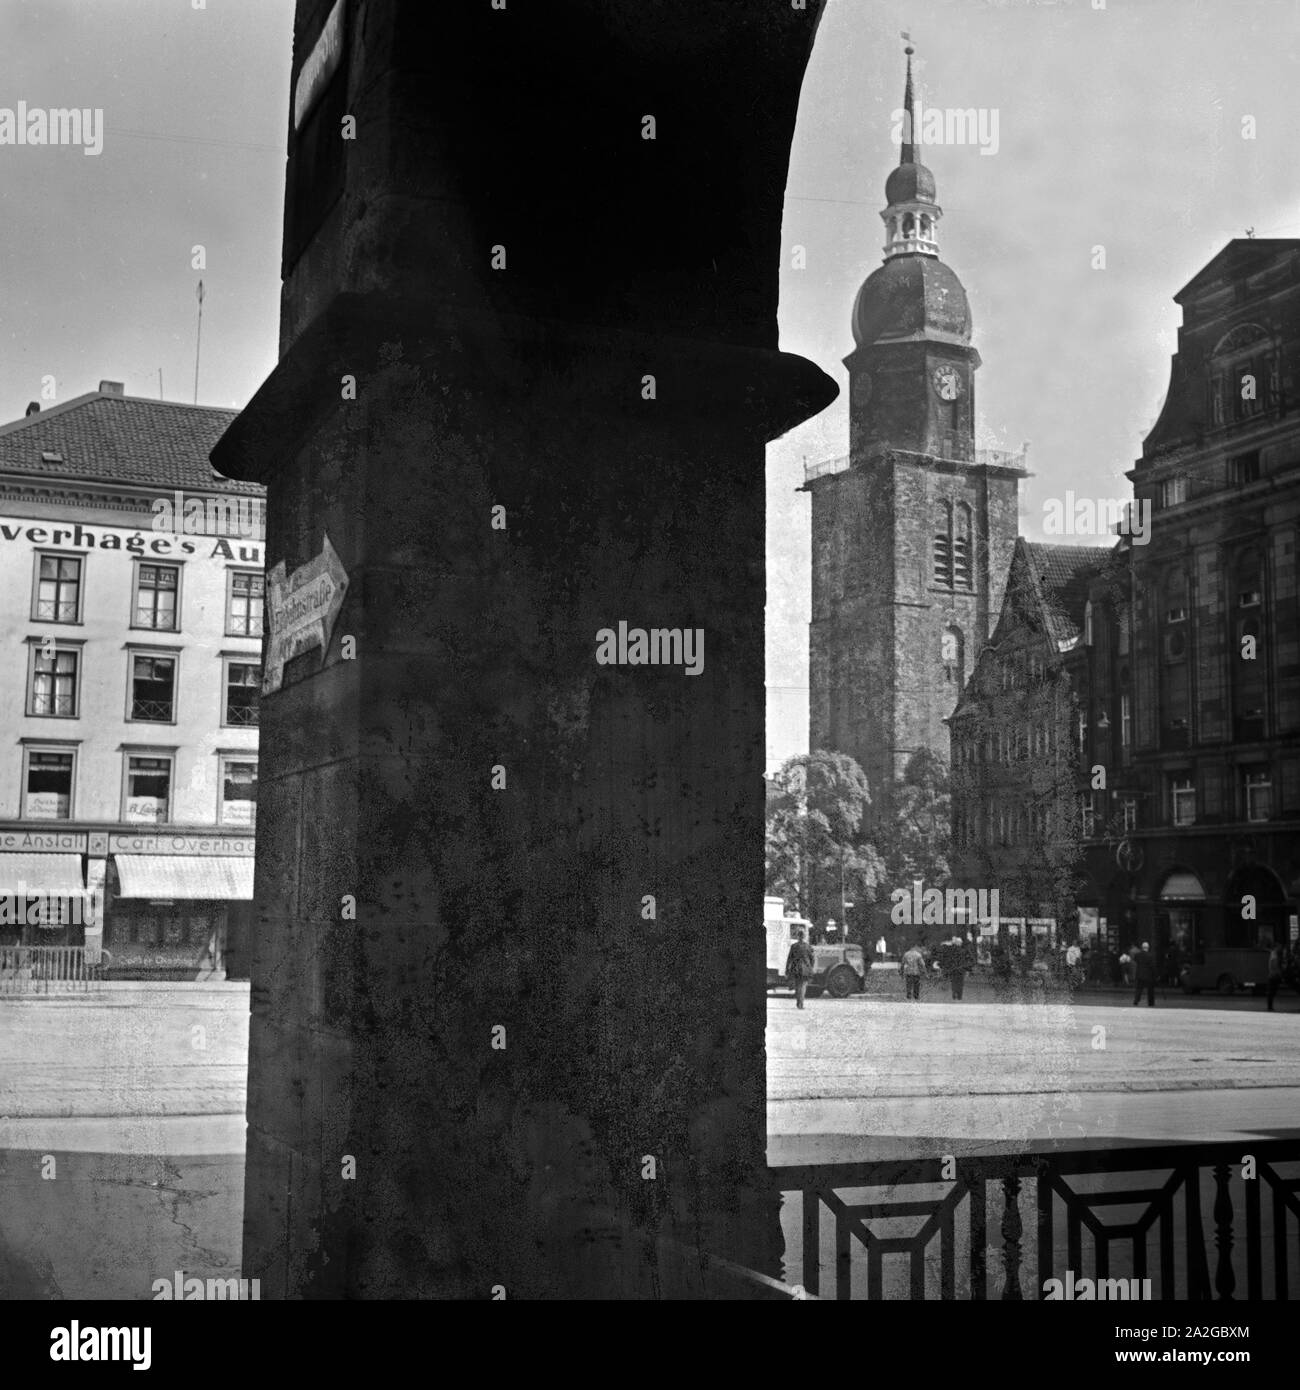 Blick auf die Reinoldikirche und die Marktecke à Dortmund, Deutschland 1930 er Jahre. Vue de l'église St Reinold marché et coin à Dortmund, Allemagne 1930. Banque D'Images